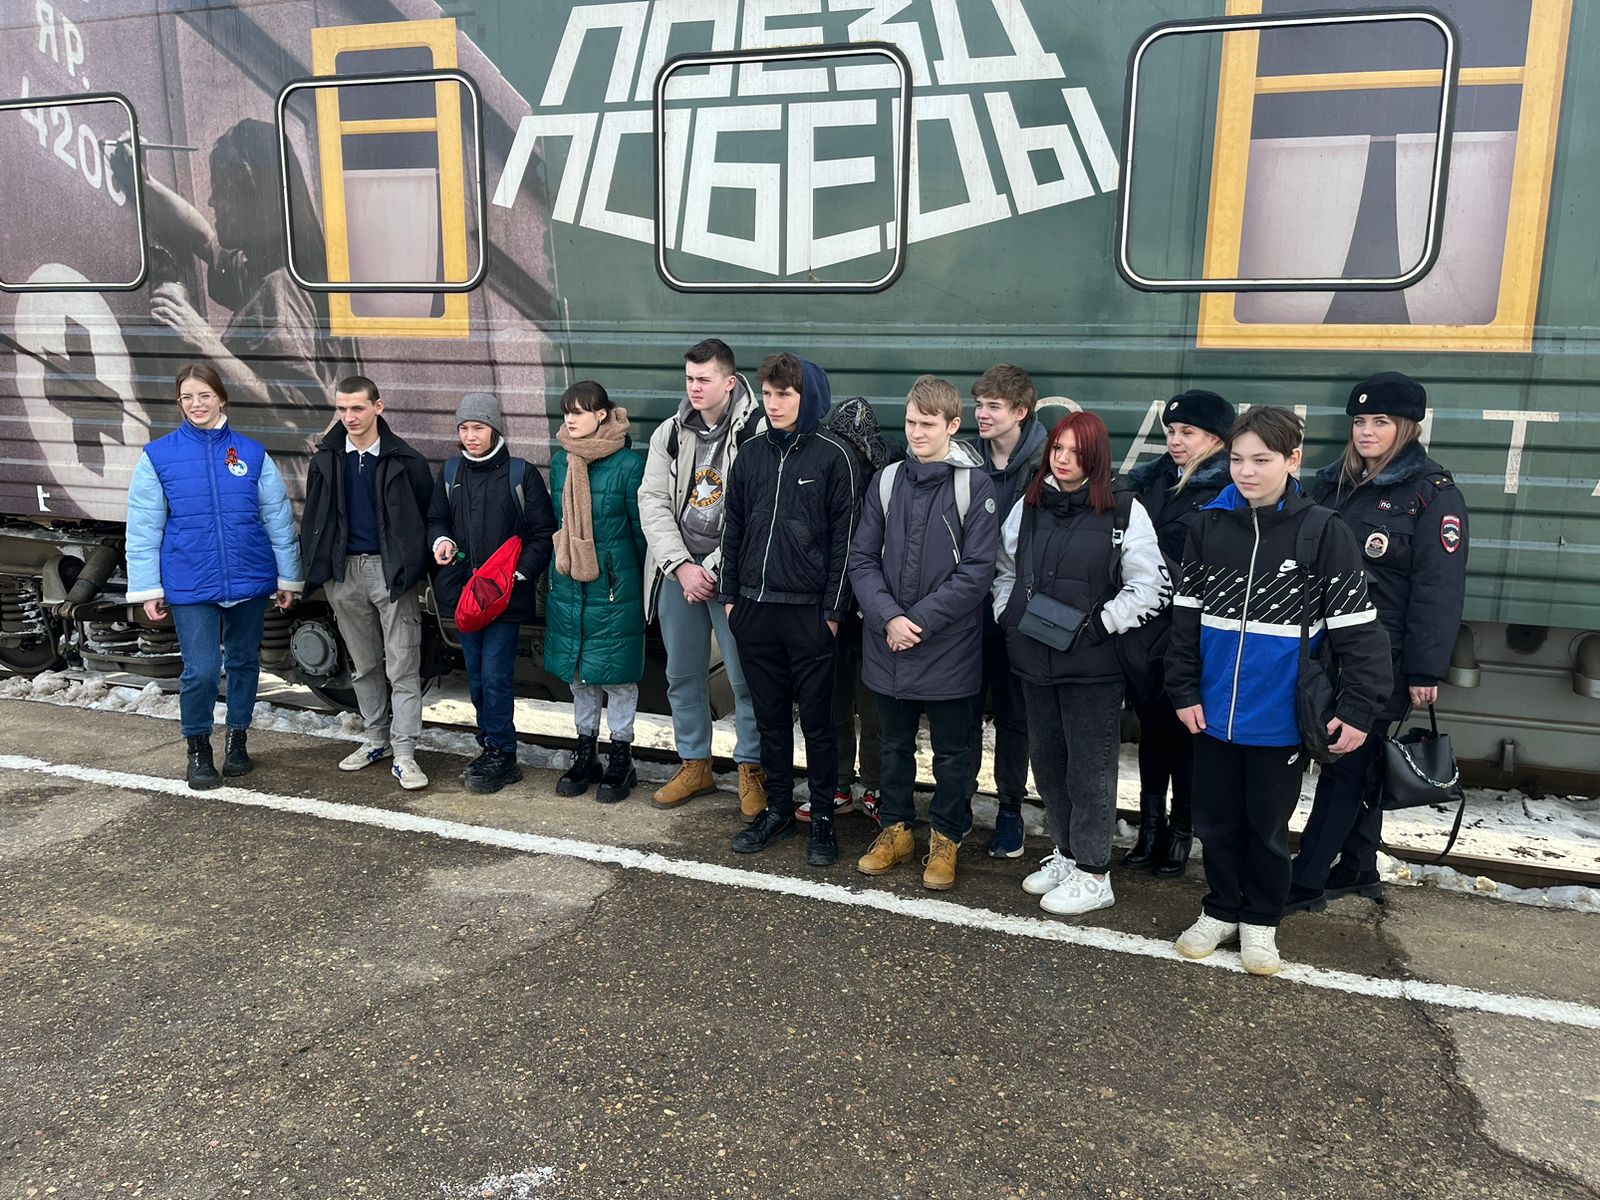 Ребята из Заднепровского района Смоленска посетили «Поезд Победы»